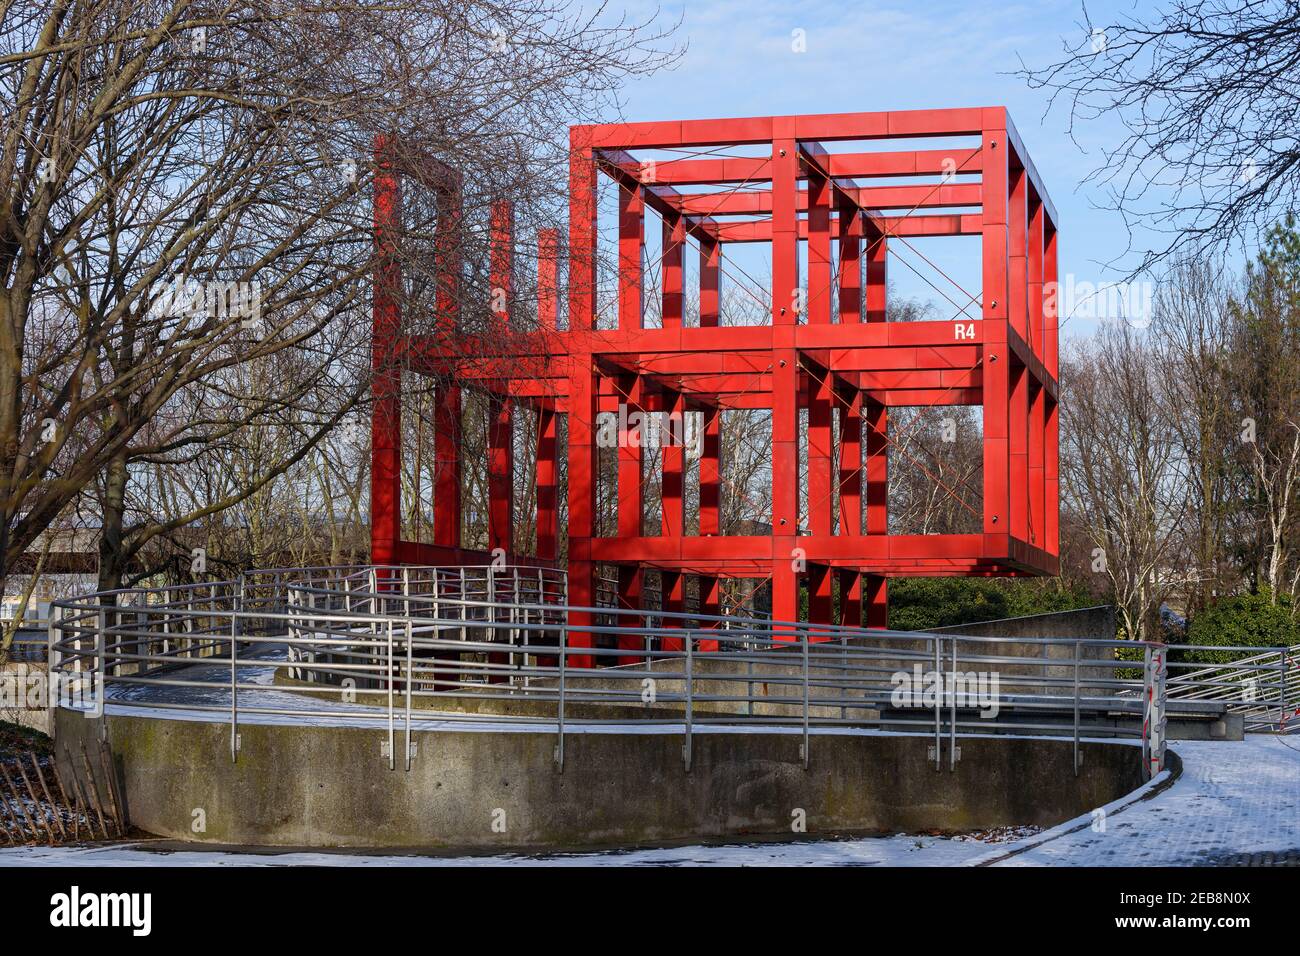 La 'R4 folie' est l'une des 26 structures métalliques rouge vif appelées 'folies' disséminées dans le Parc de la Villette à Paris 19. Banque D'Images